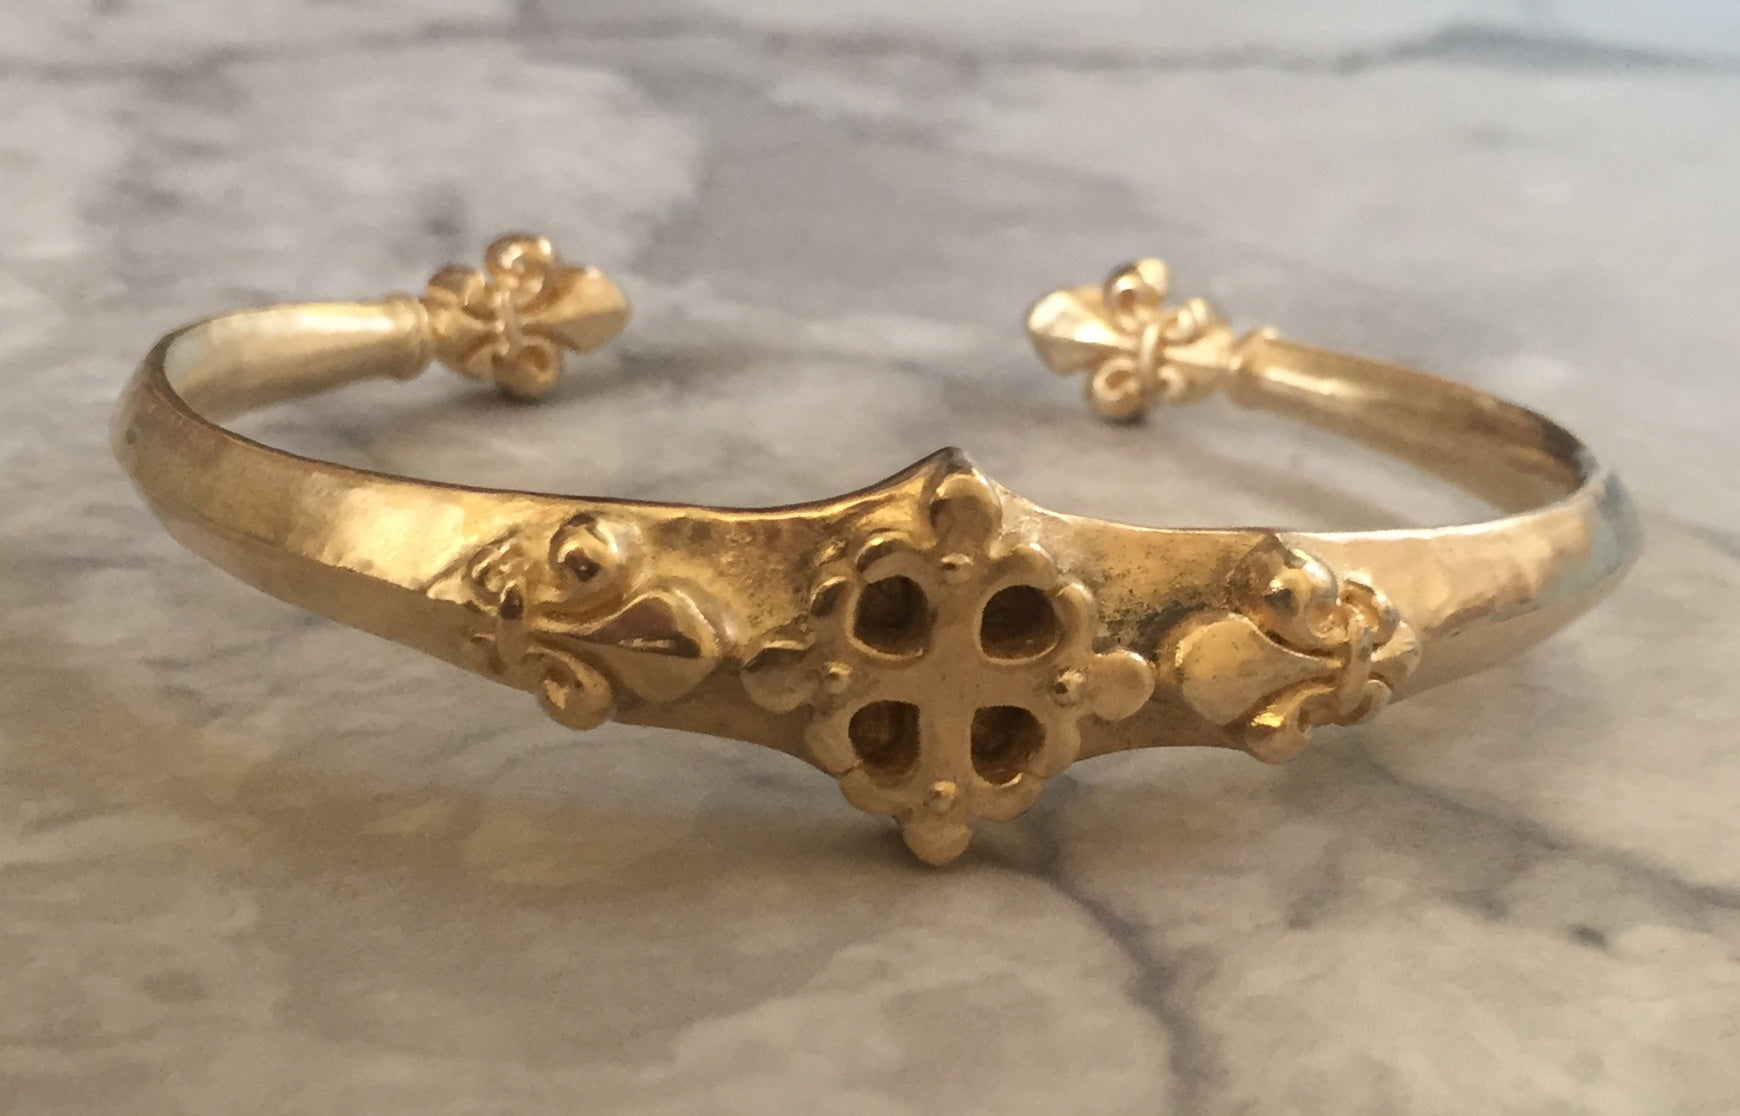 Bracelet - Gold Renaissance Fleur de Lis cuff by Roman Paul